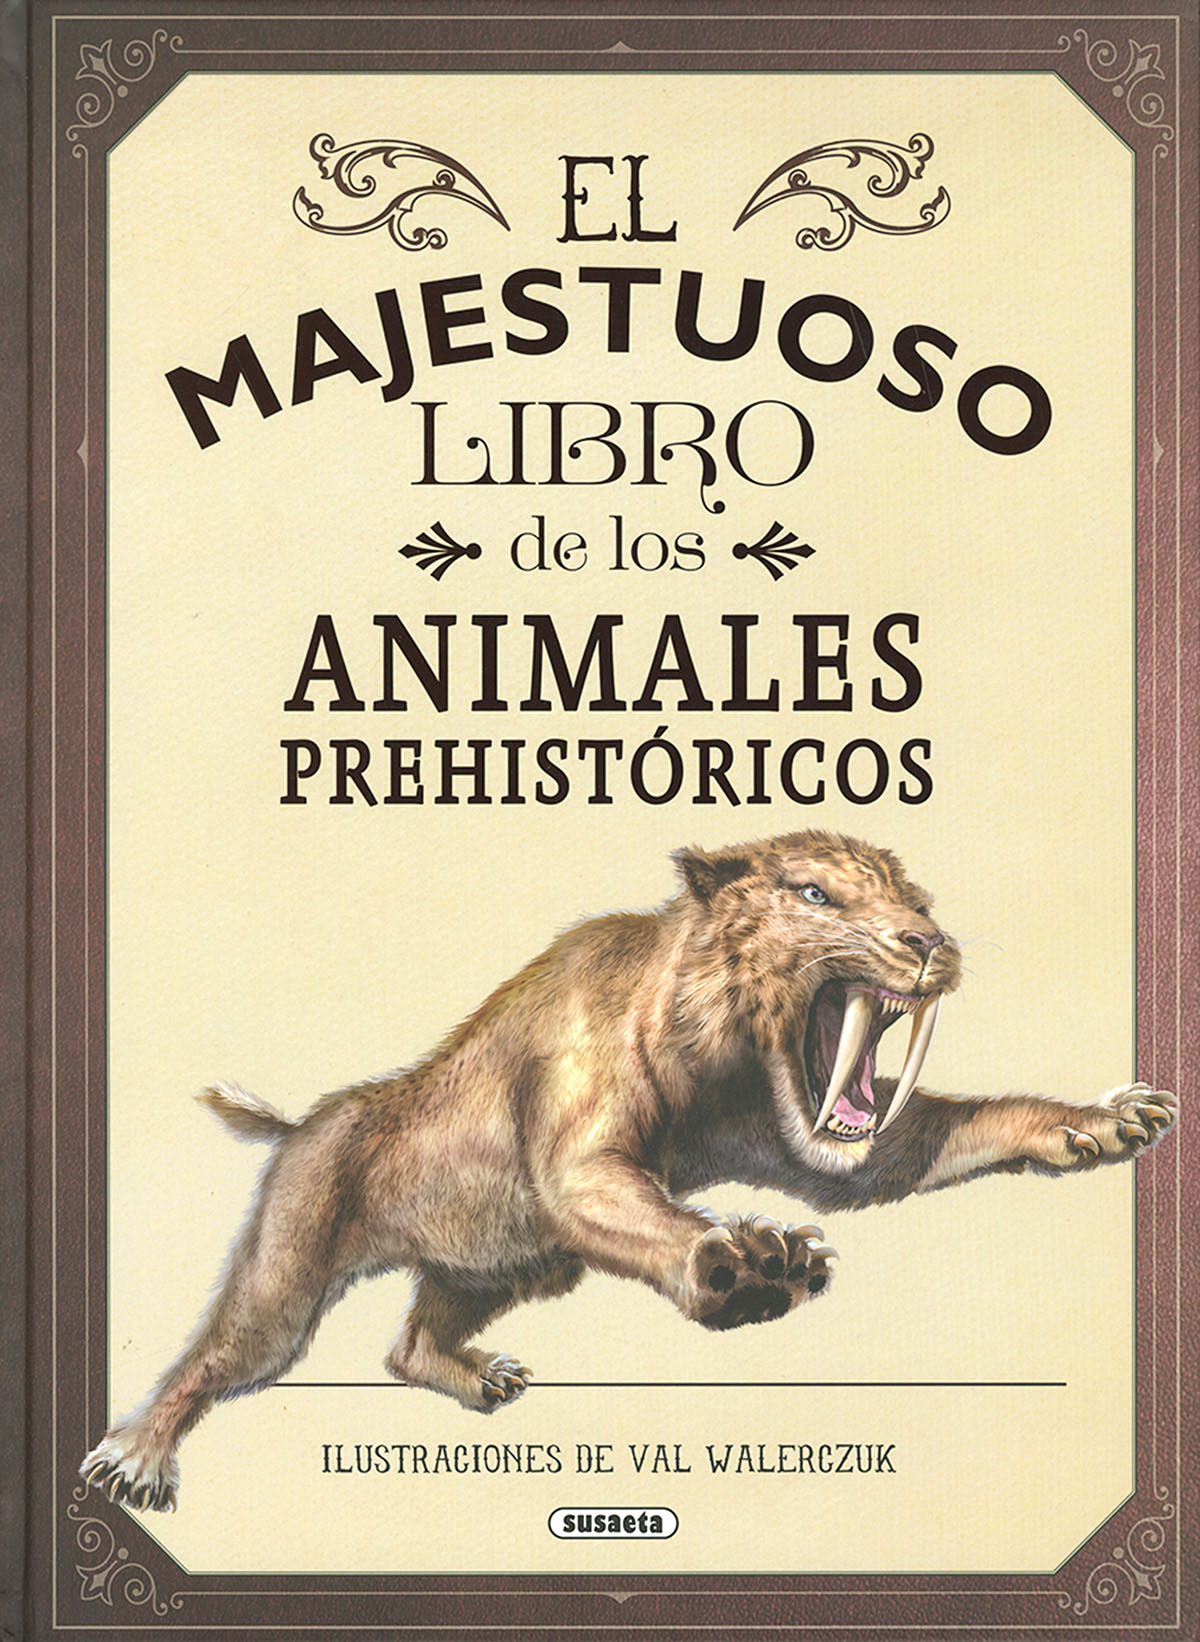 El majestuoso libro de los animales prehistricos